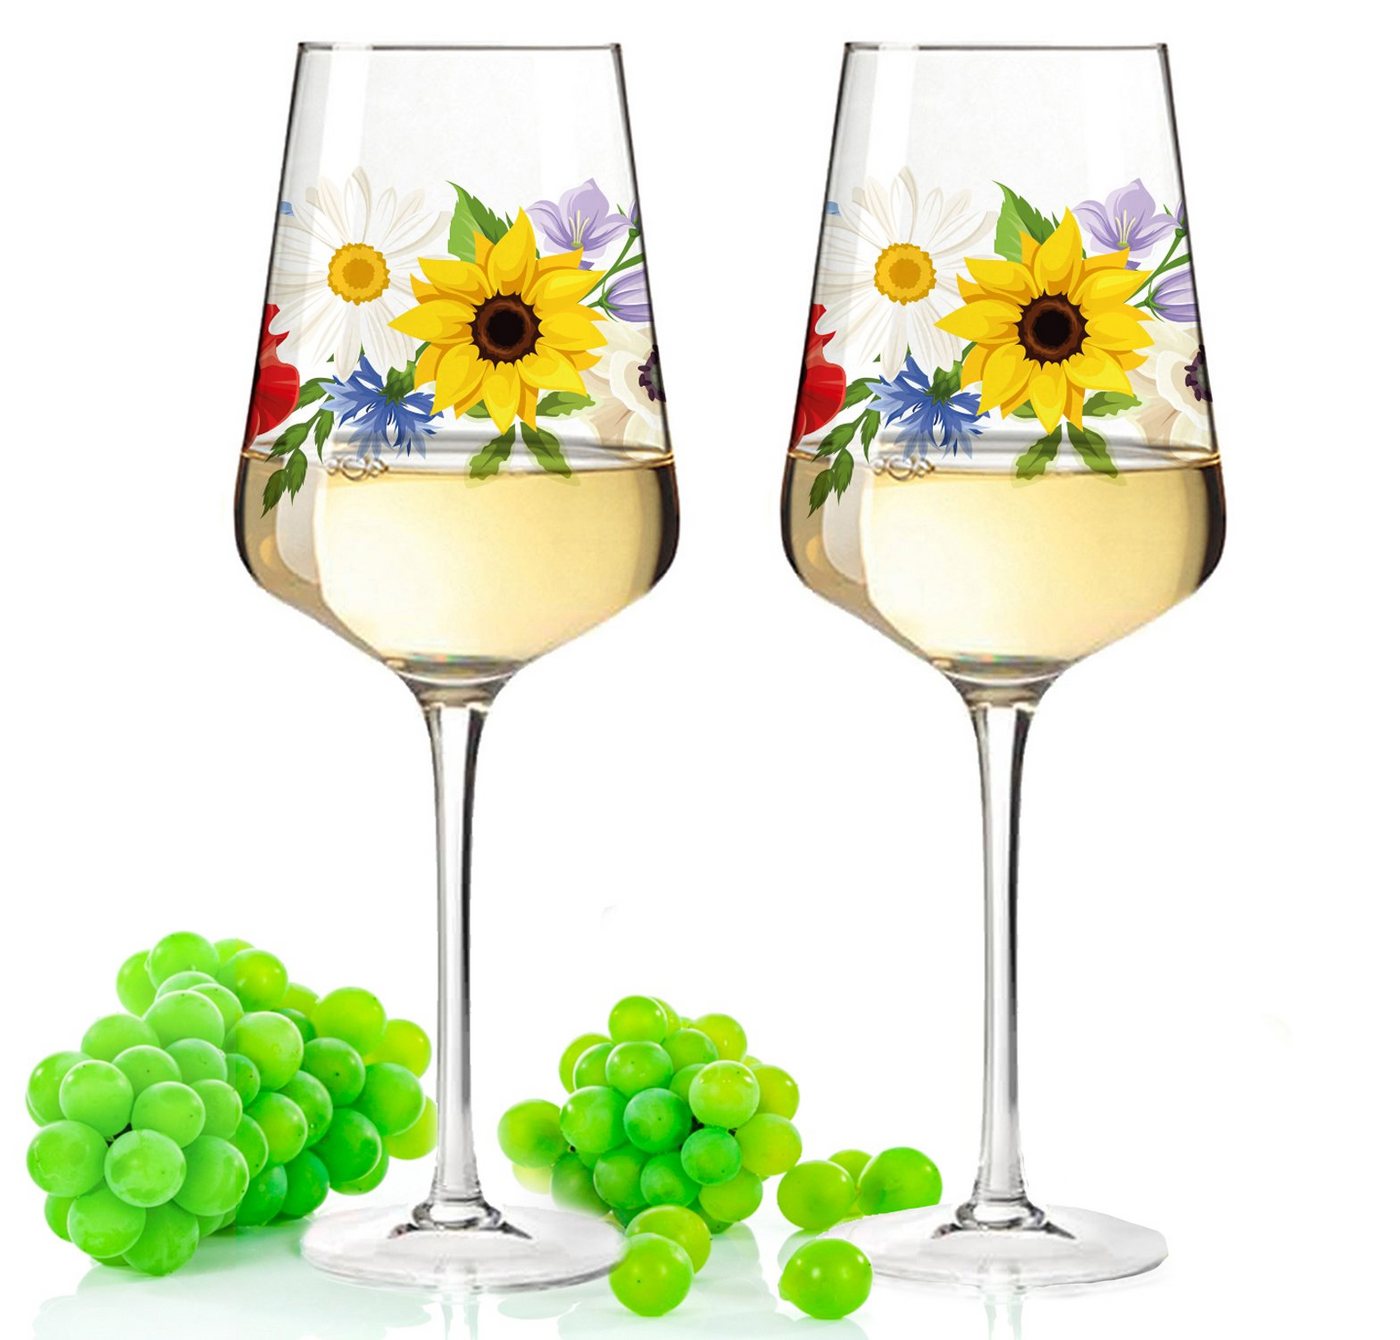 GRAVURZEILE Rotweinglas Leonardo Puccini Weinglas mit UV-Druck - Blumenbouquet Design, Glas, Sommerliche Weingläser mit Blumen für Aperol, Weißwein und Rotwein von GRAVURZEILE